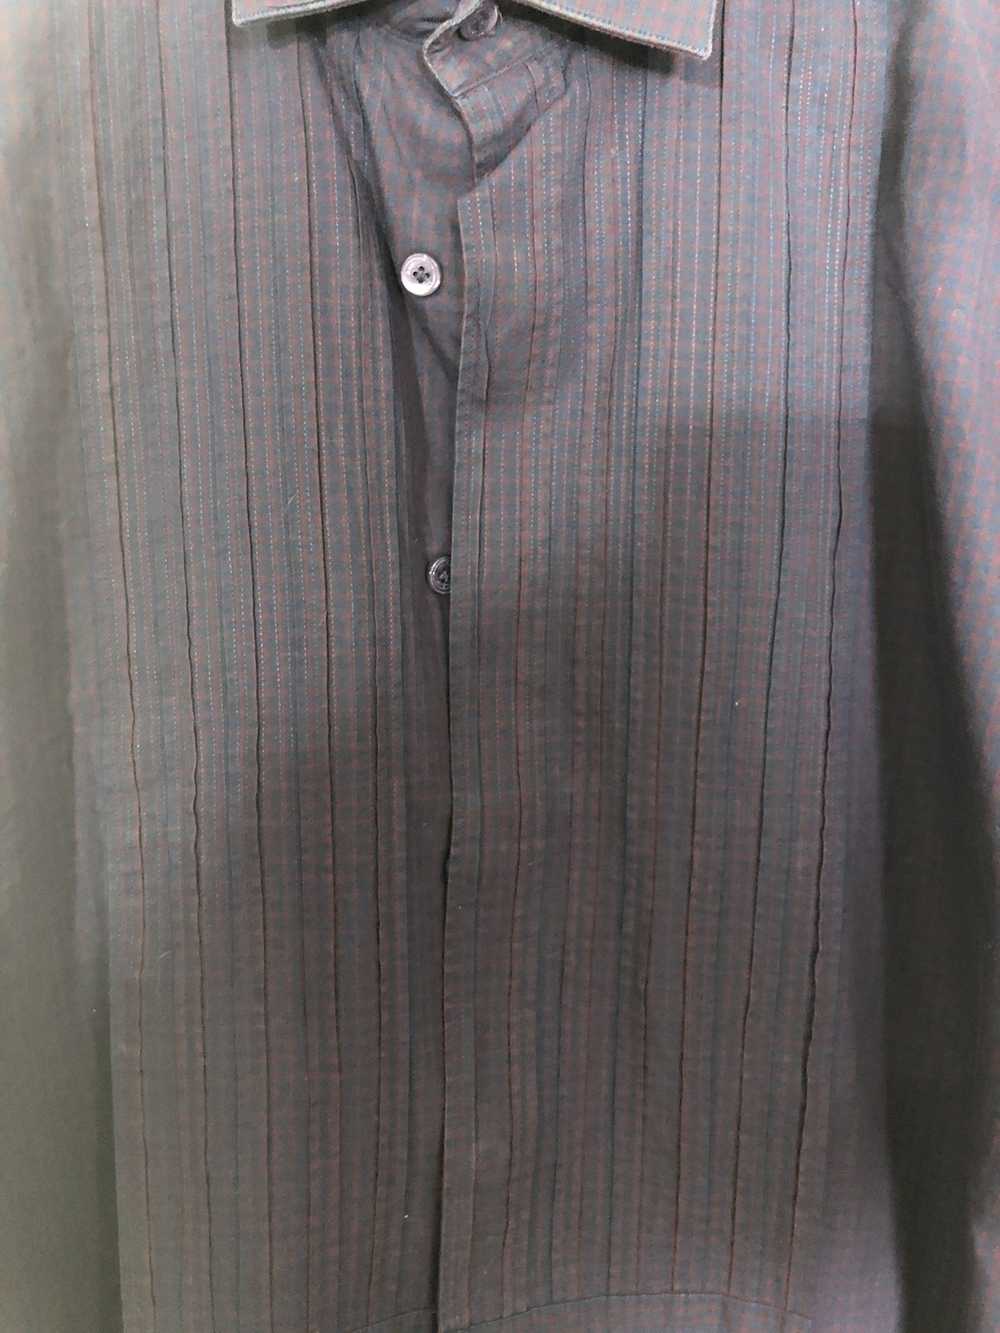 Lanvin Tuxedo Style Pleated Placket Dress Shirt - image 3